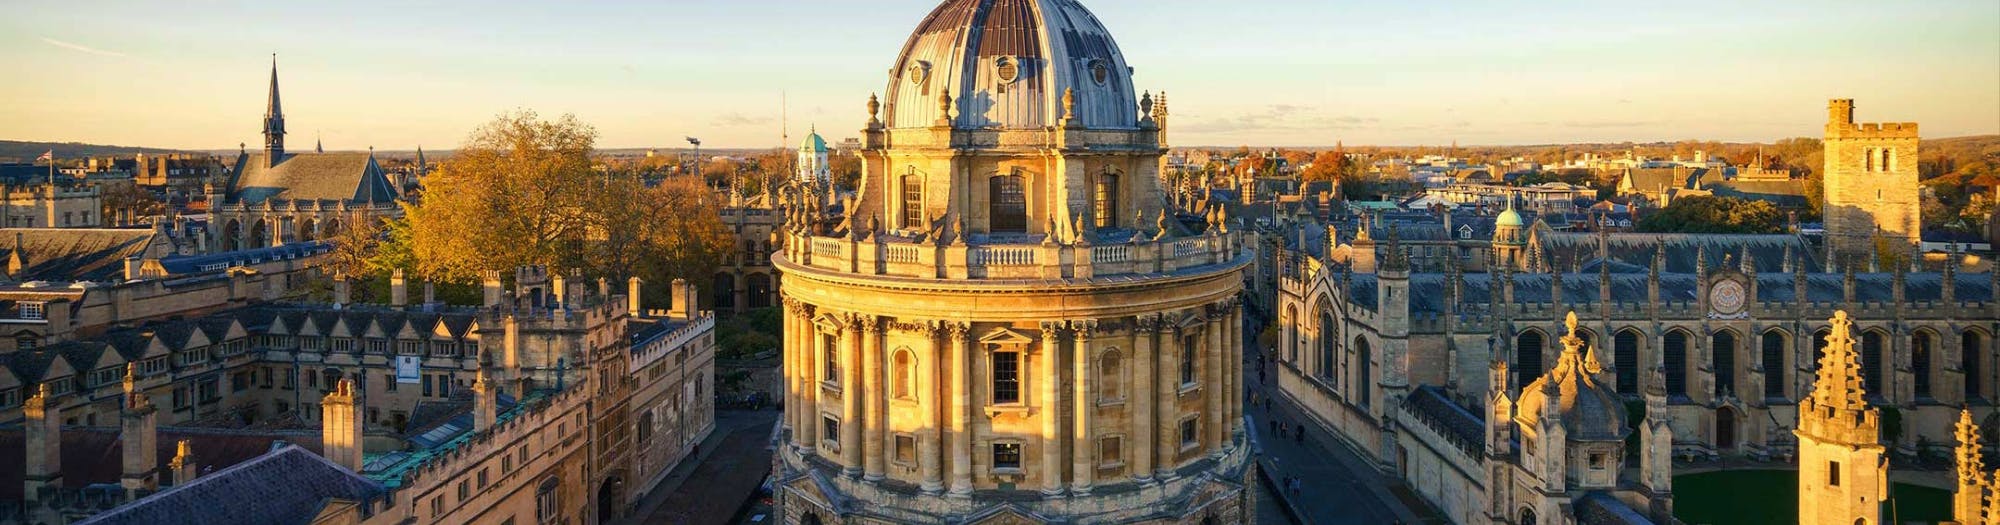 Visita guiada a Oxford y Cambridge desde Londres